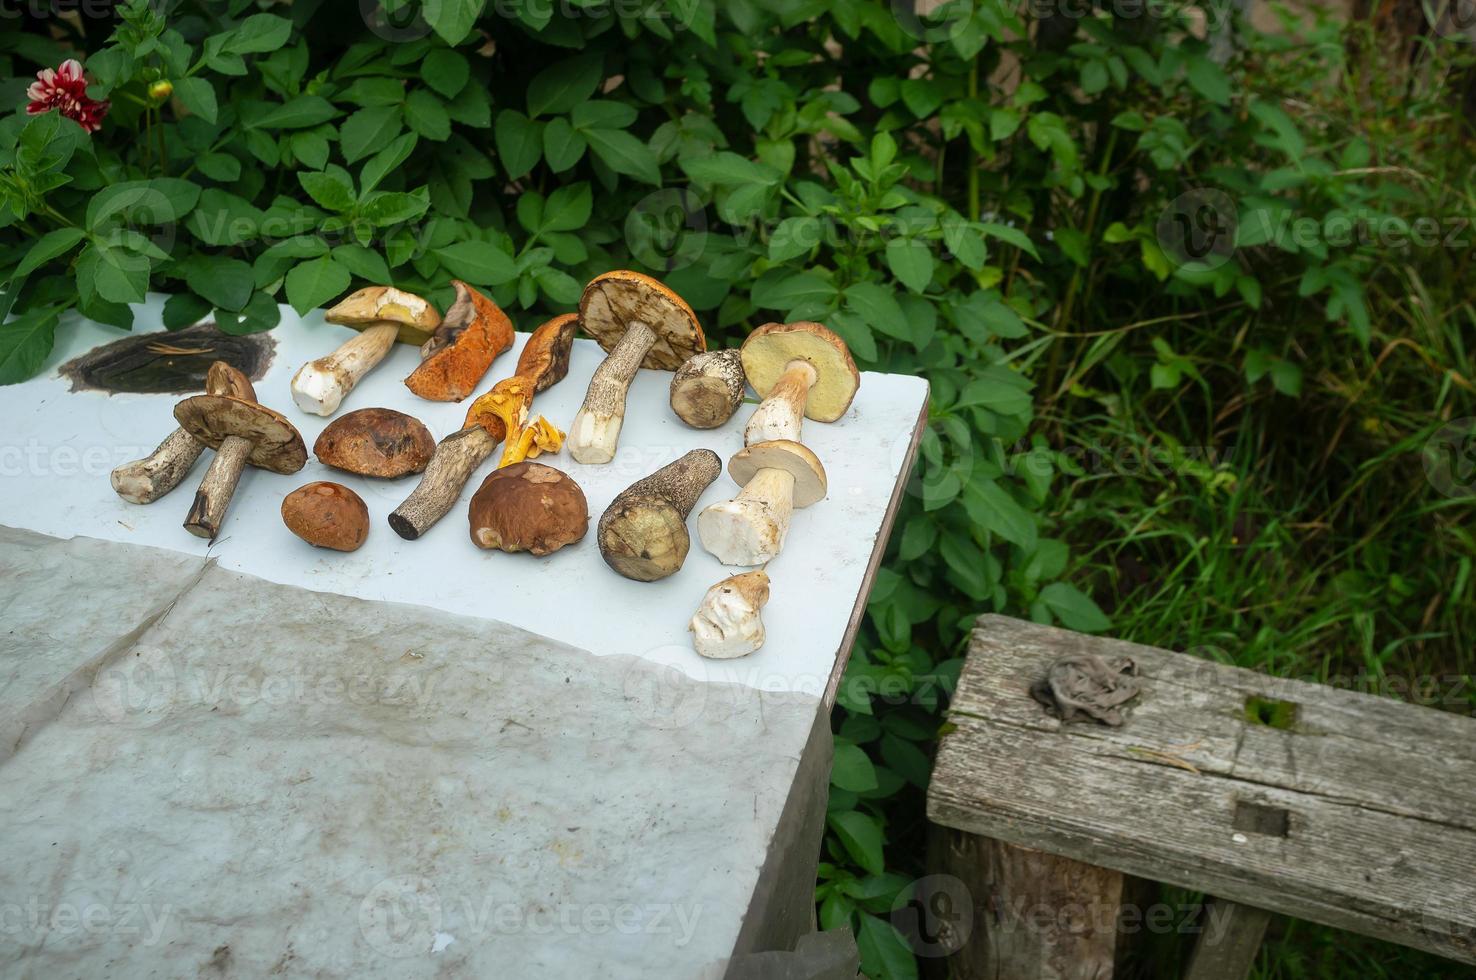 les champignons comestibles ramassés se trouvent sur la table dans la cour du village. photo